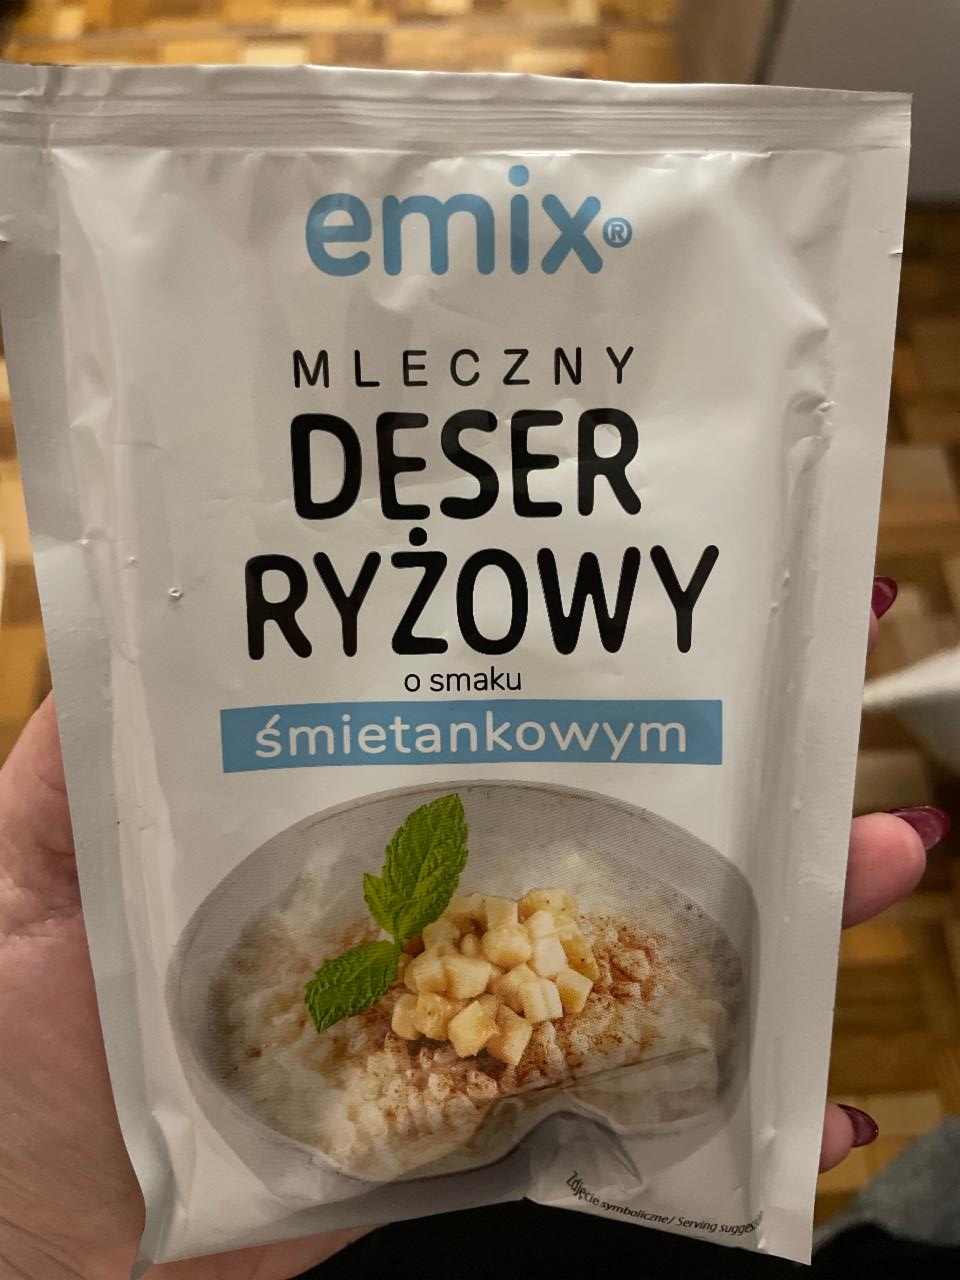 Fotografie - Mleczny Deser ryżowy o smaku śmietankowym Emix